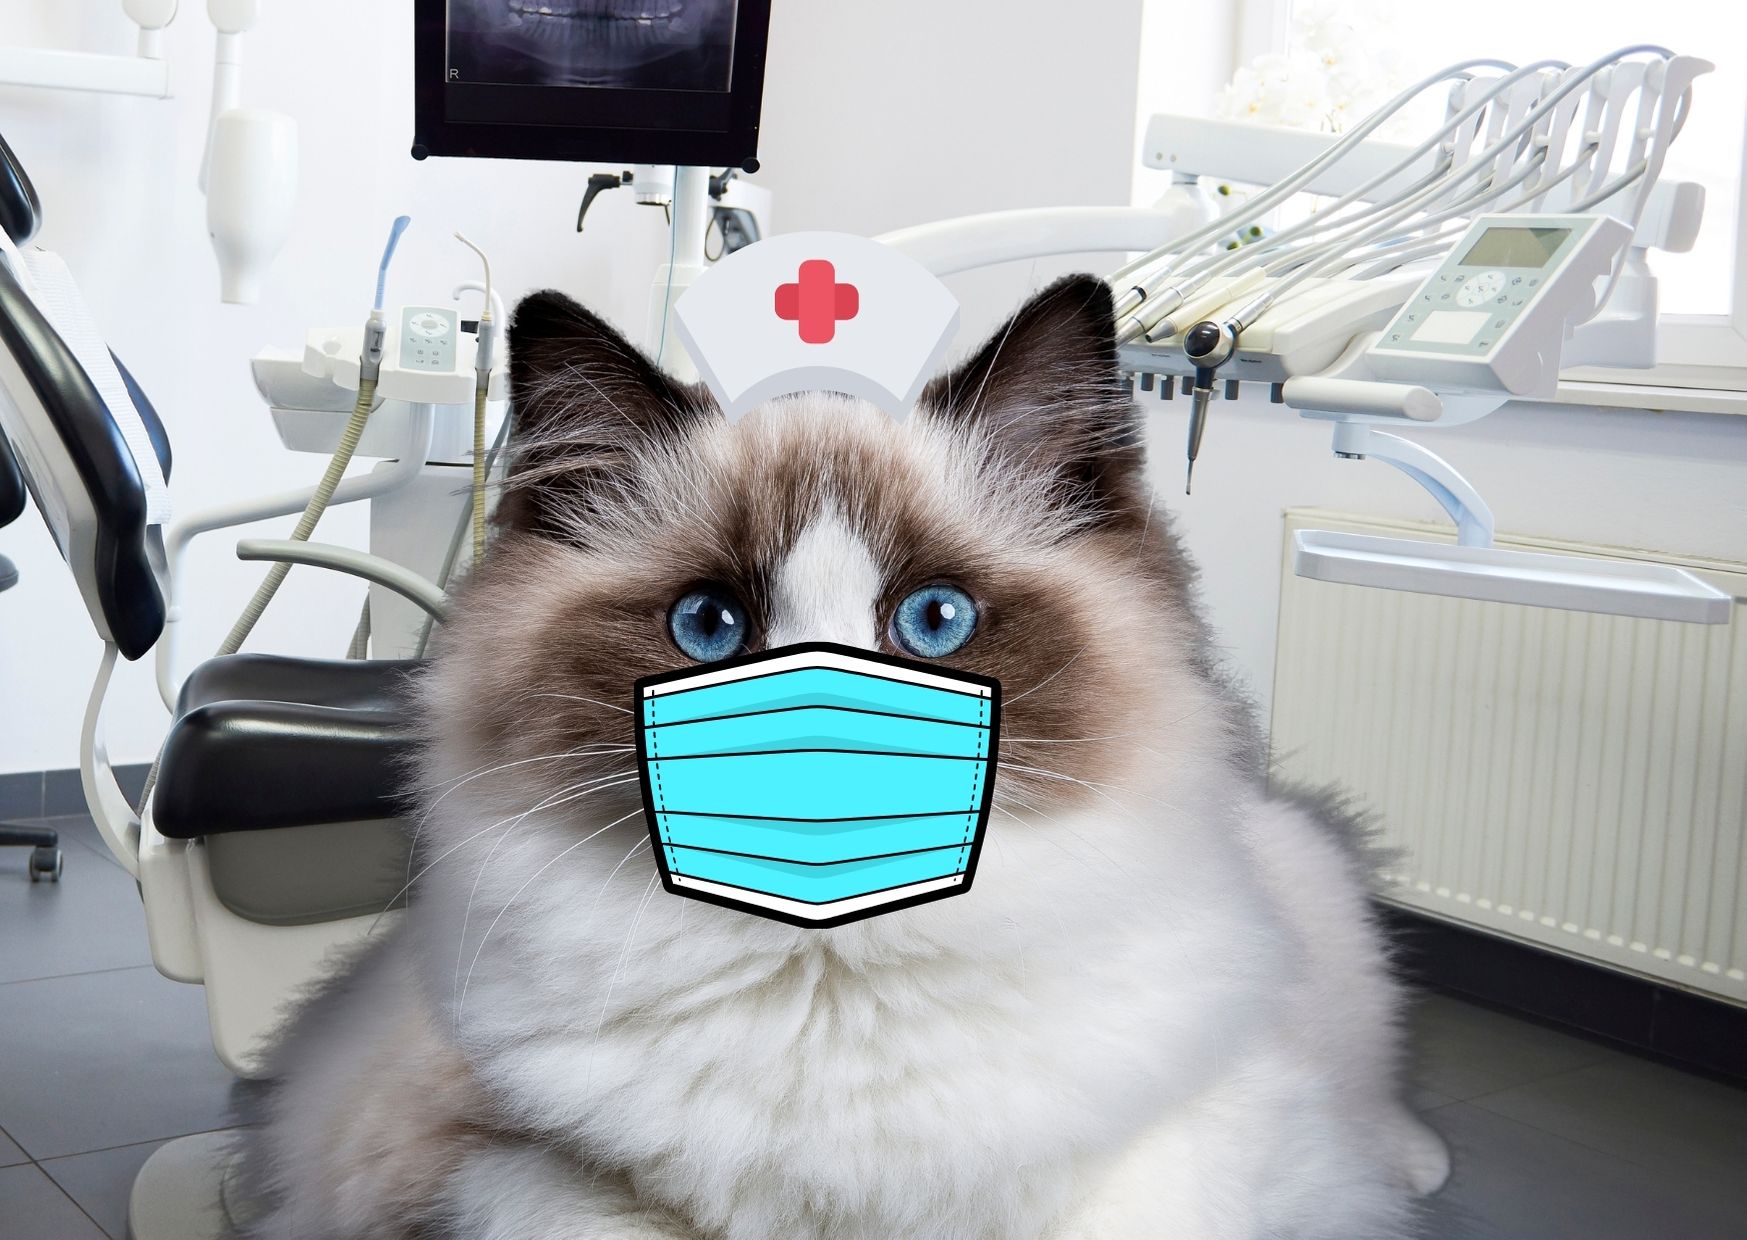 Nurse Kitty said Hi!